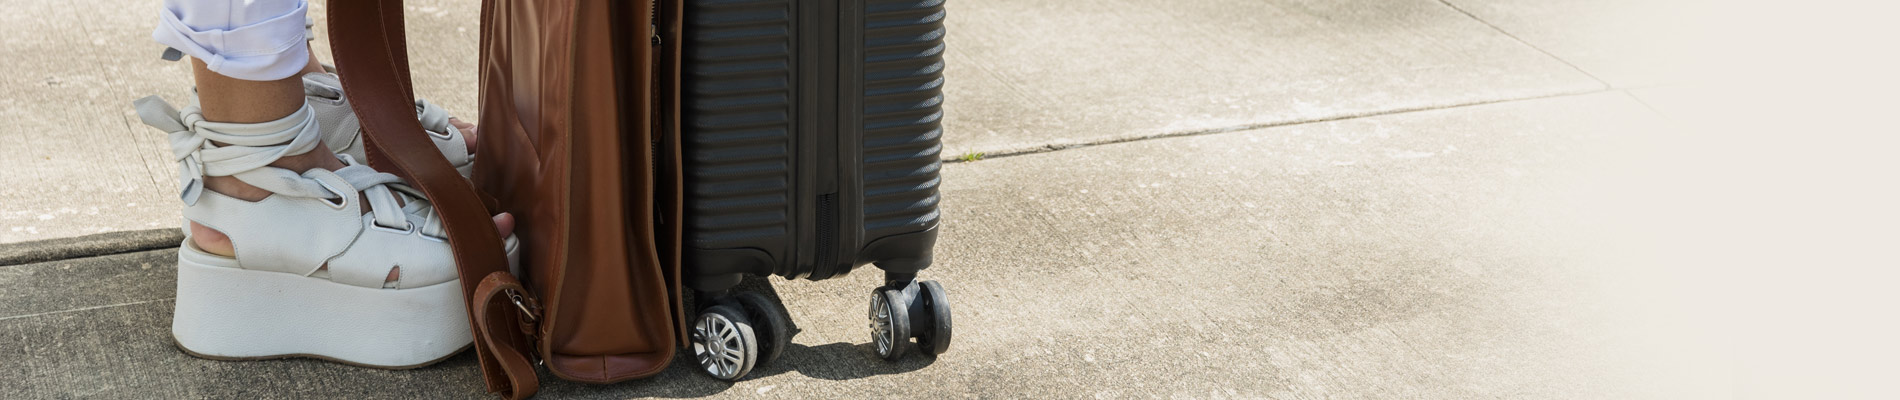 O que pode levar na bagagem de mão do avião?